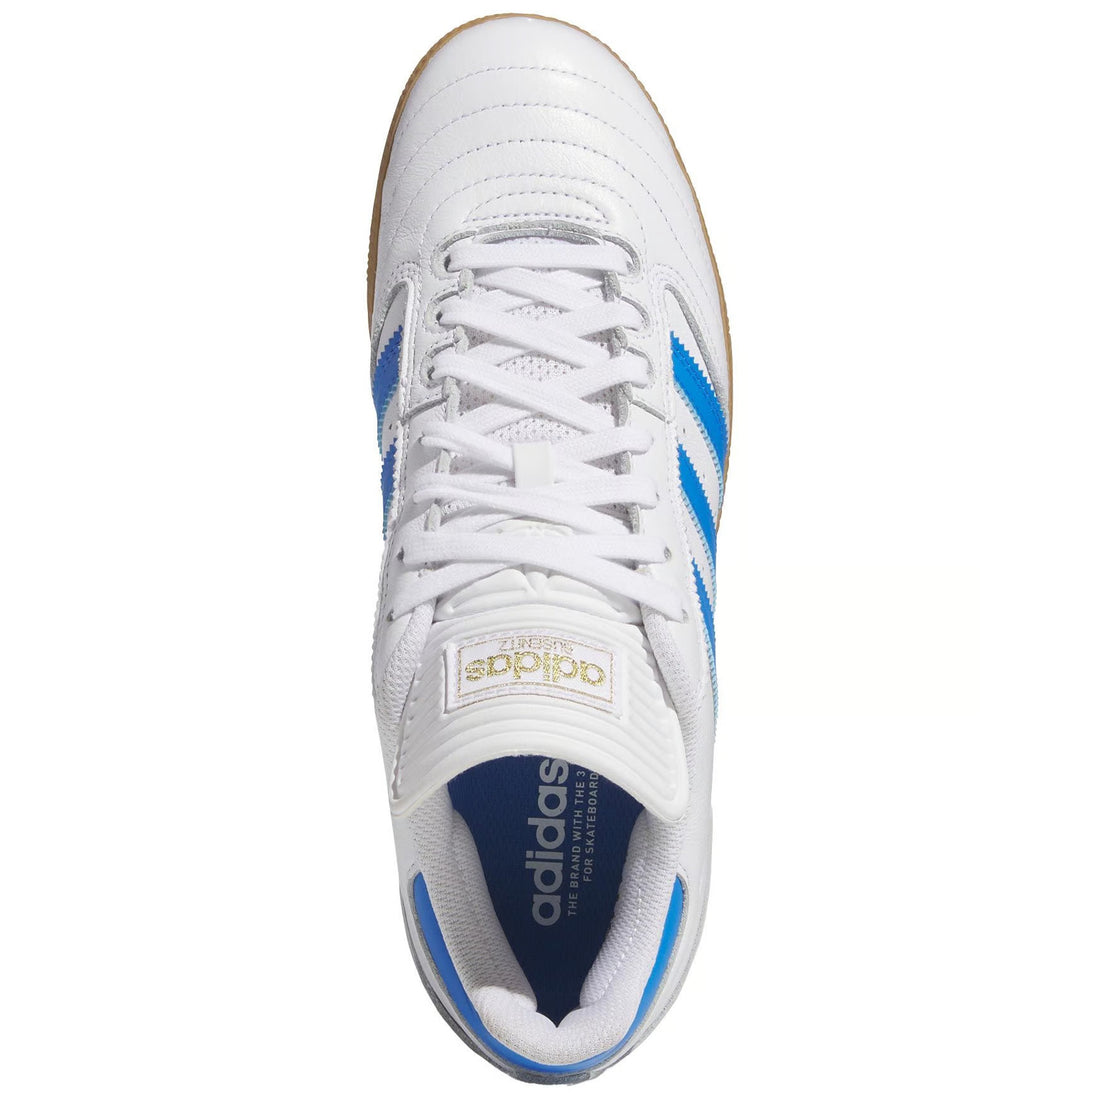 Adidas Busenitz Blue / White